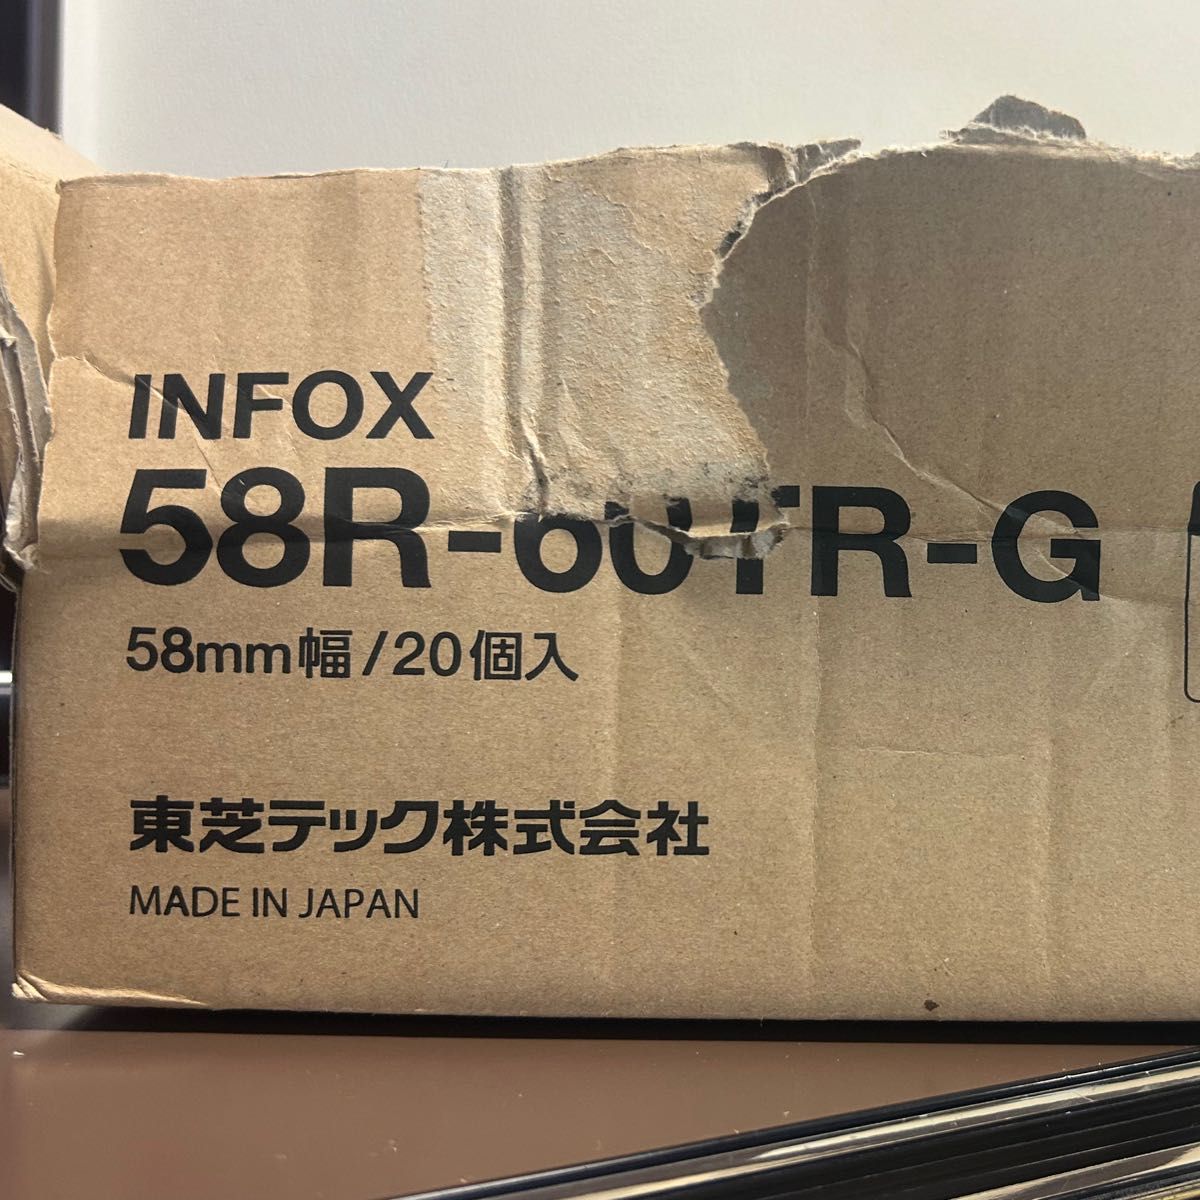 サーマルロールペーパー10個入INFOX 58R-60TR-G 